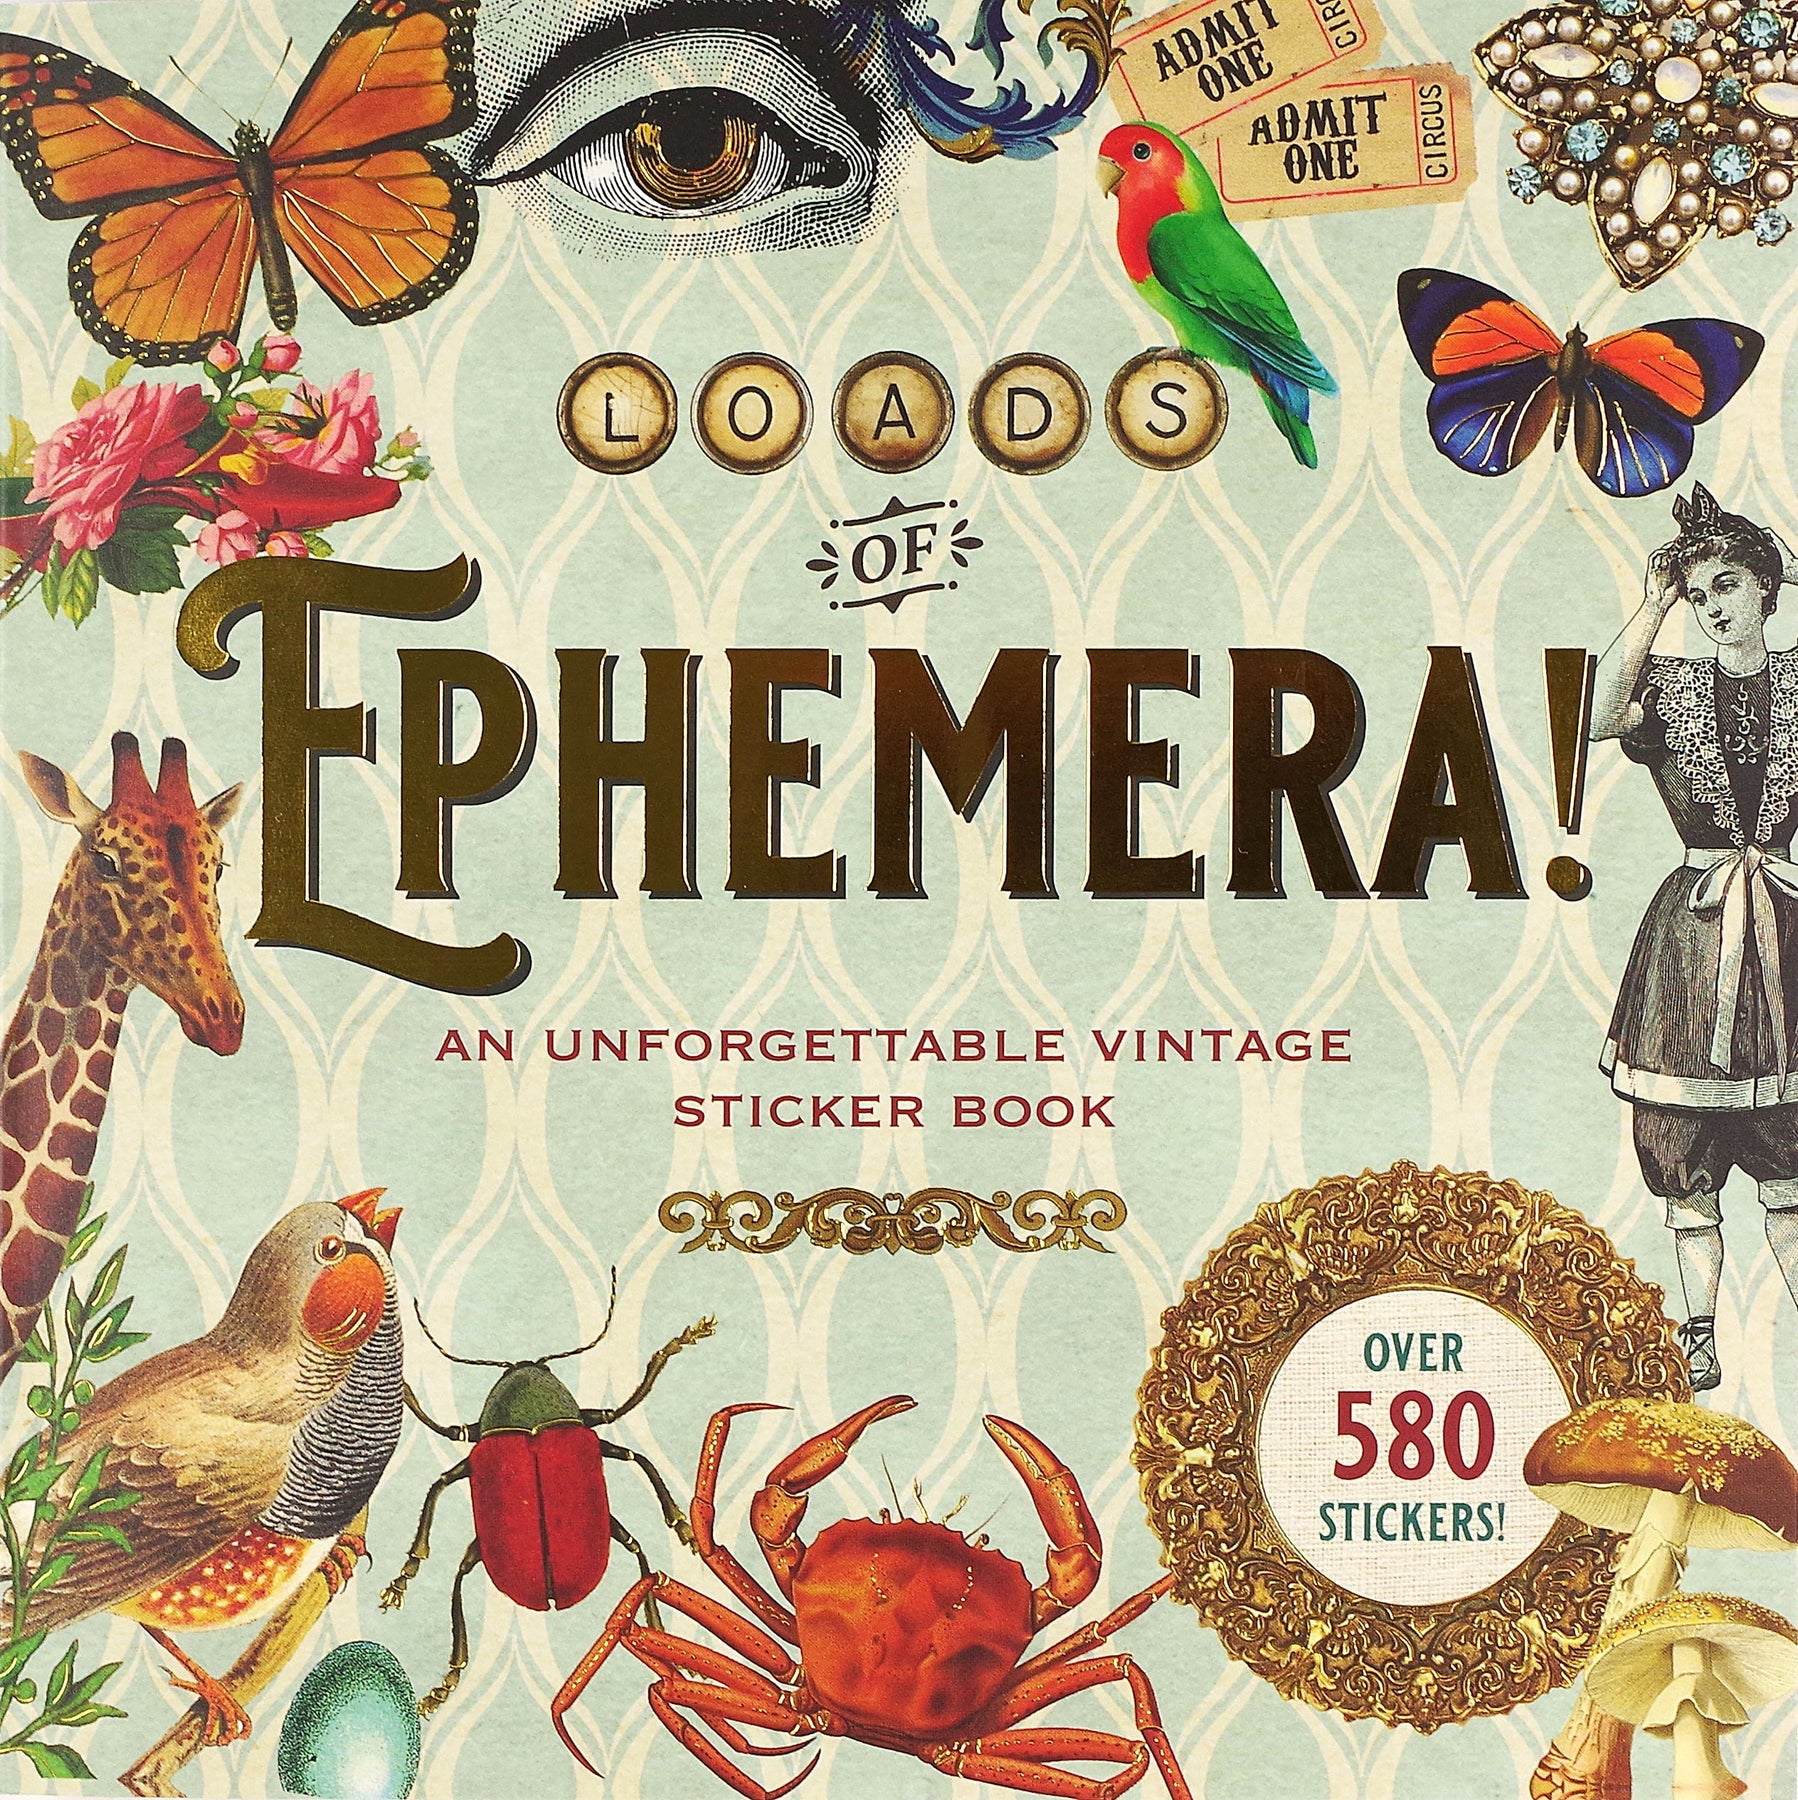 Loads of Ephemera!: An Unforgettable Vintage Sticker Book (Over 580+ Stickers!)